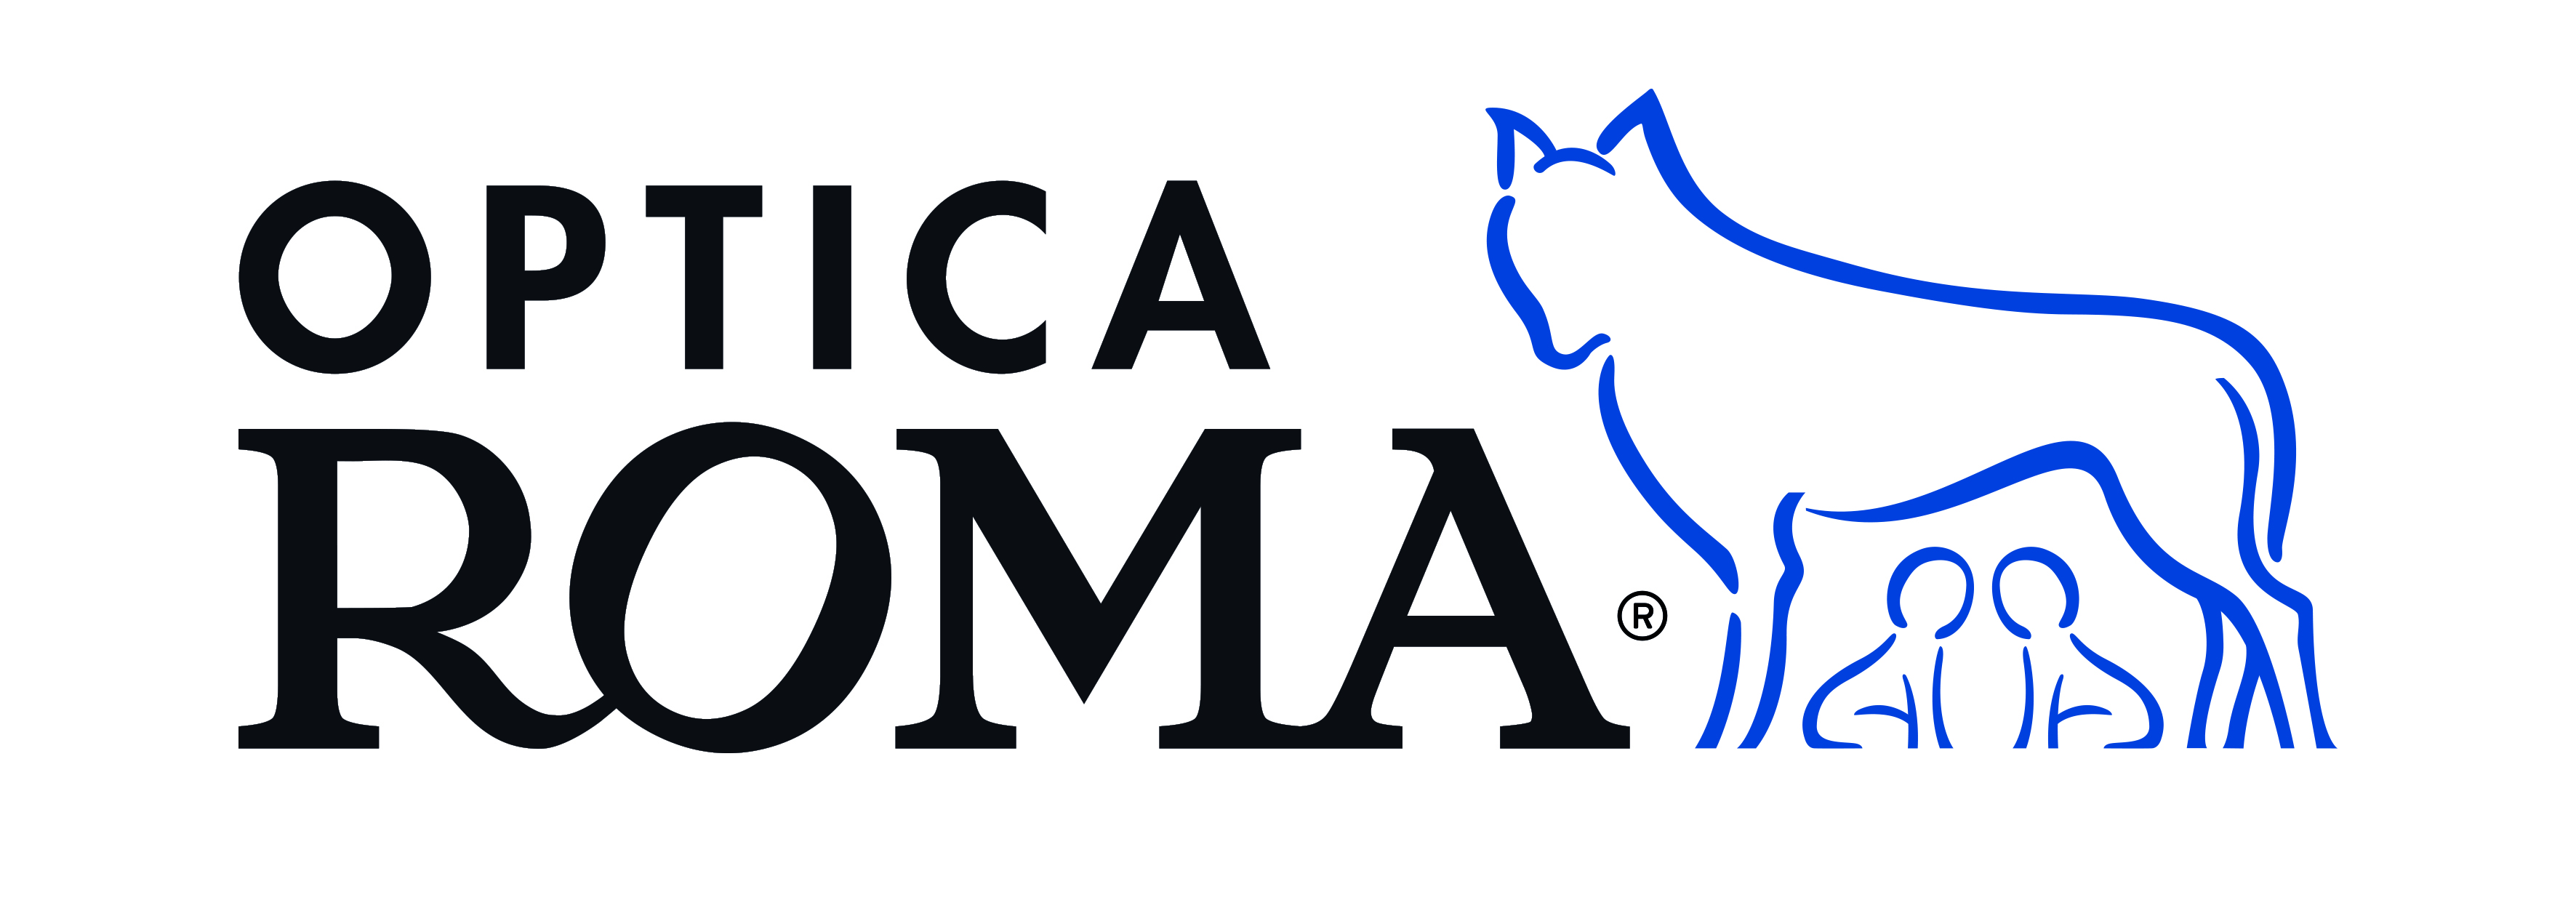 optica_roma_logo_ok